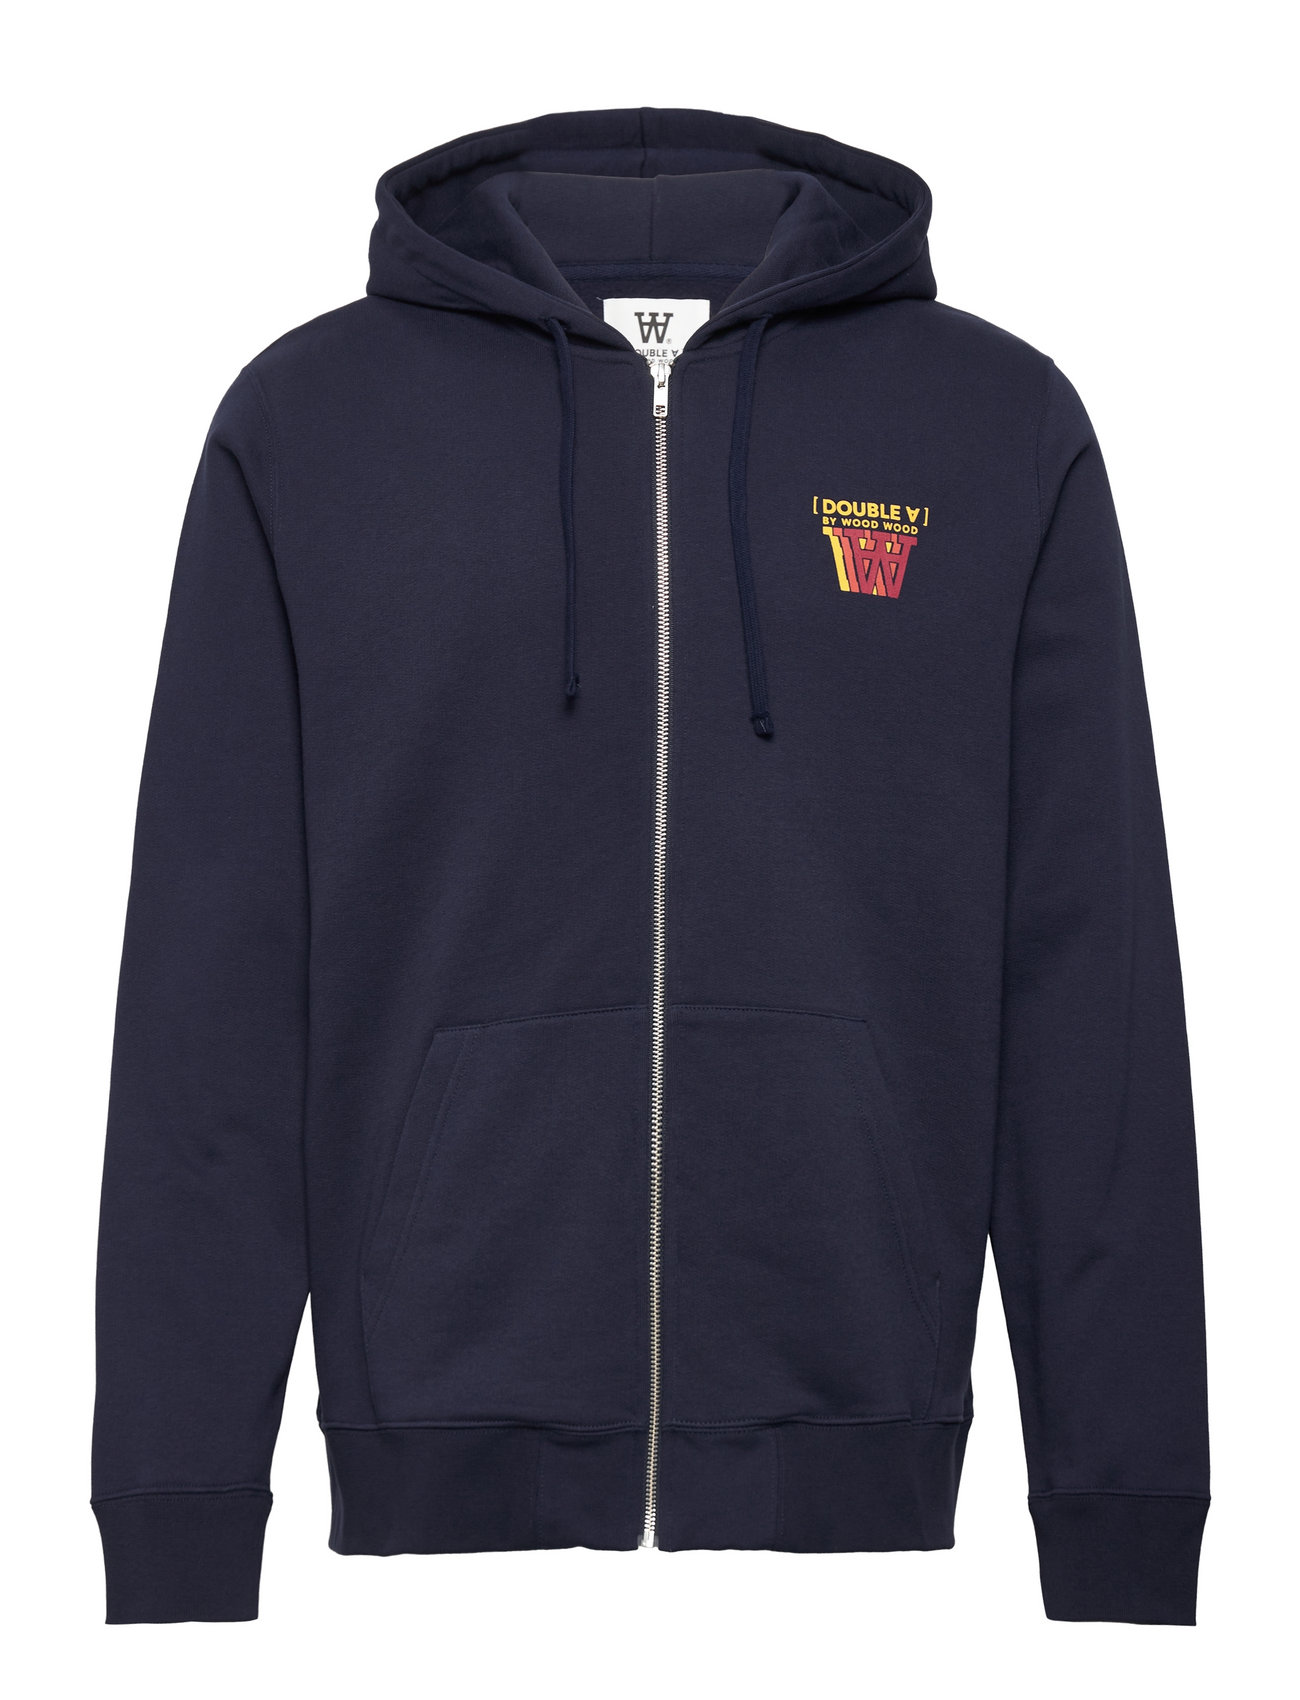 Zan Stacked Logo Zip Hoodie Tops Sweatshirts & Hoodies Hoodies Navy Double A By Wood Wood